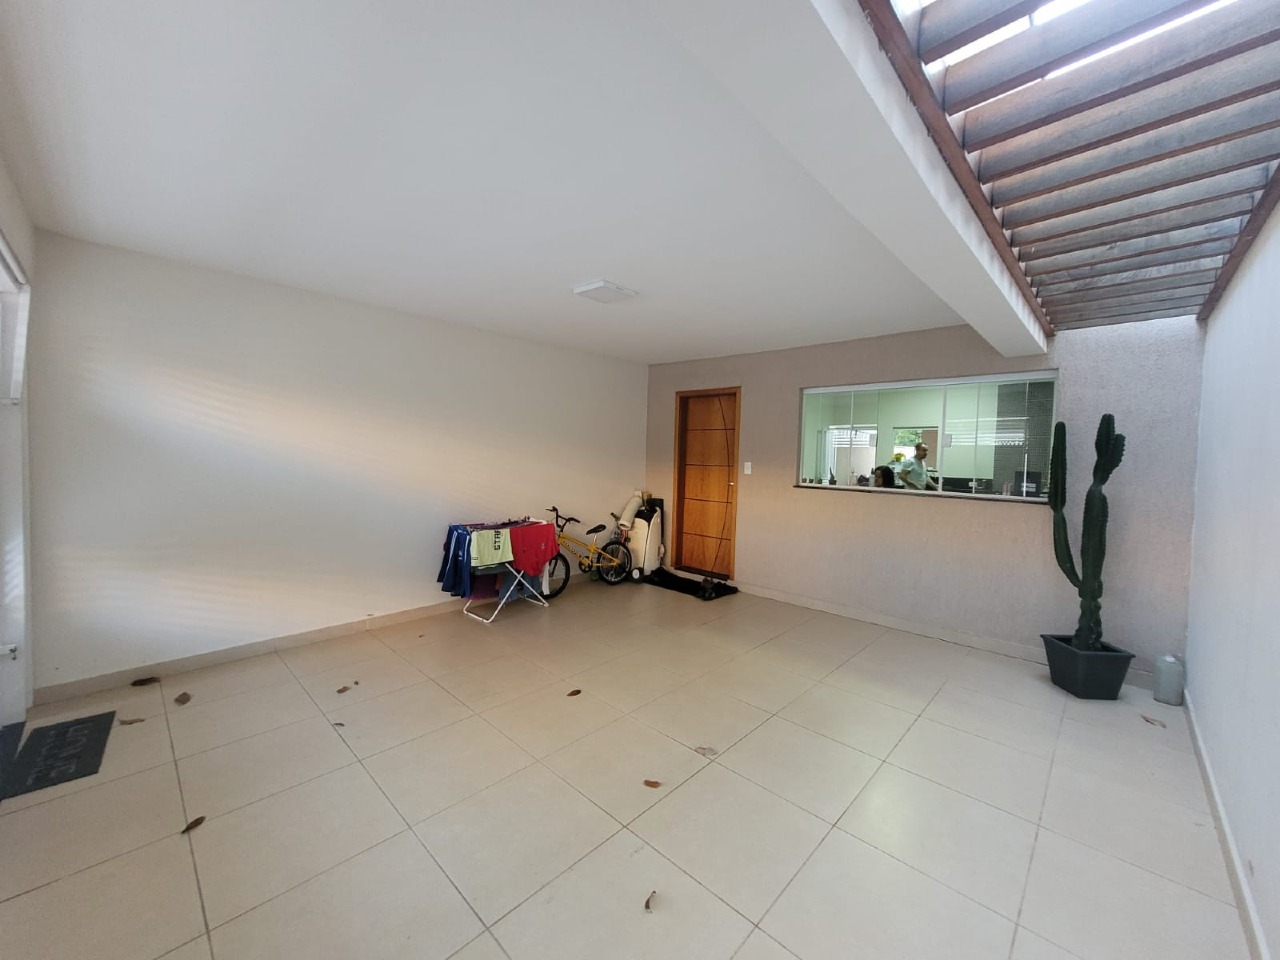 Casa à venda, 4 quartos, sendo 1 suíte, 2 vagas, no bairro Jardim Brasília em Piracicaba - SP